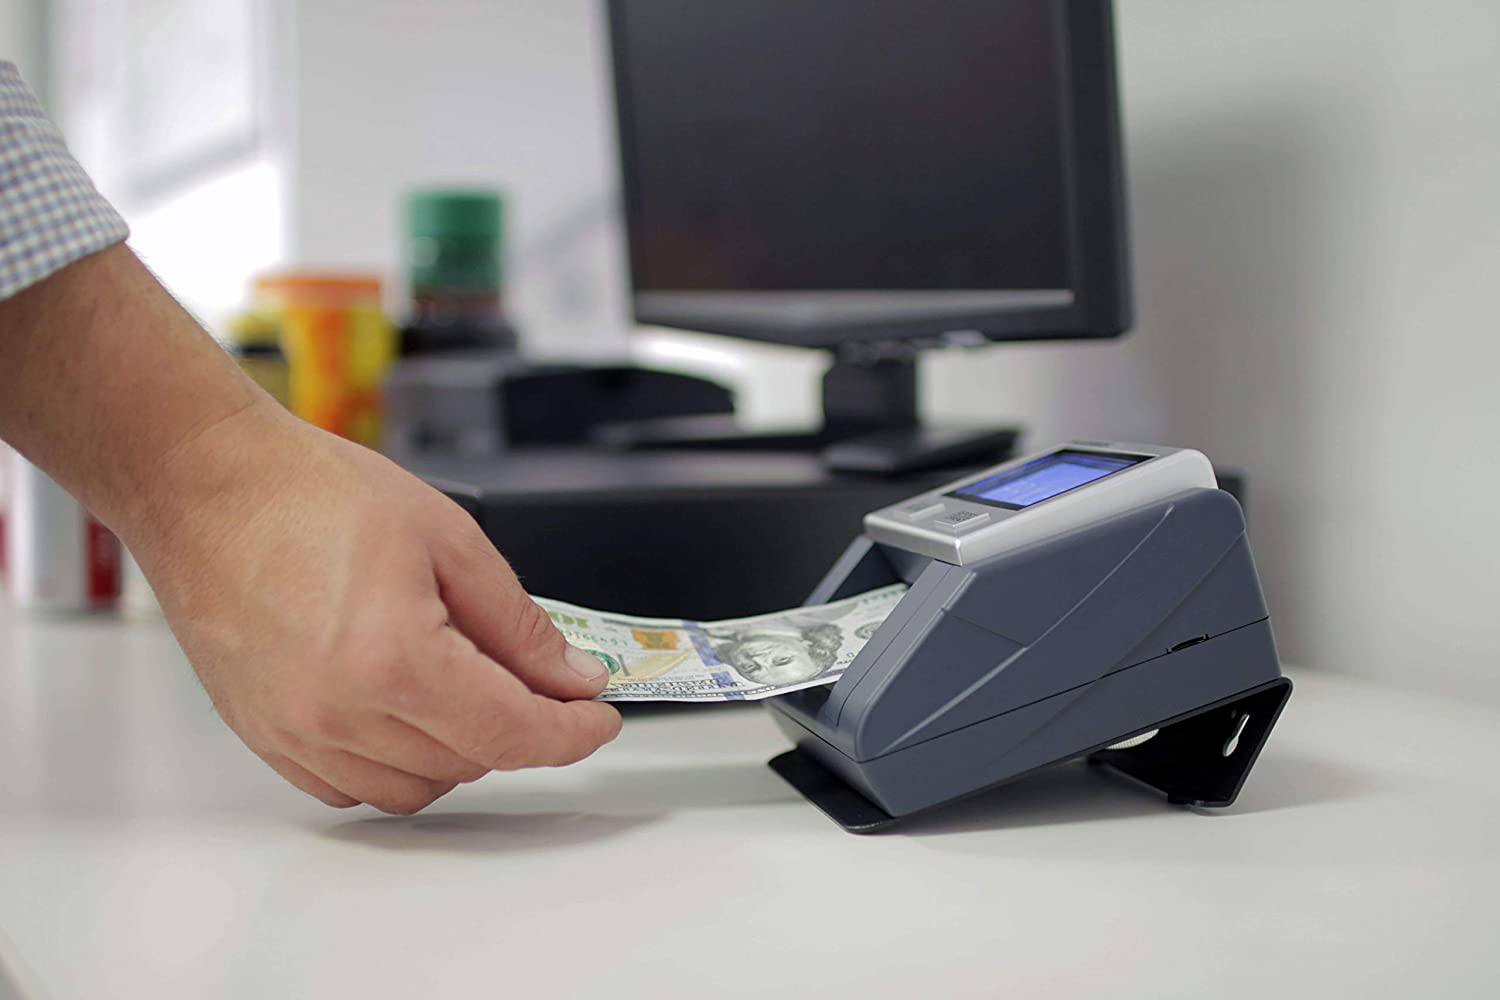  Detector automático de billetes falsos : Productos de Oficina